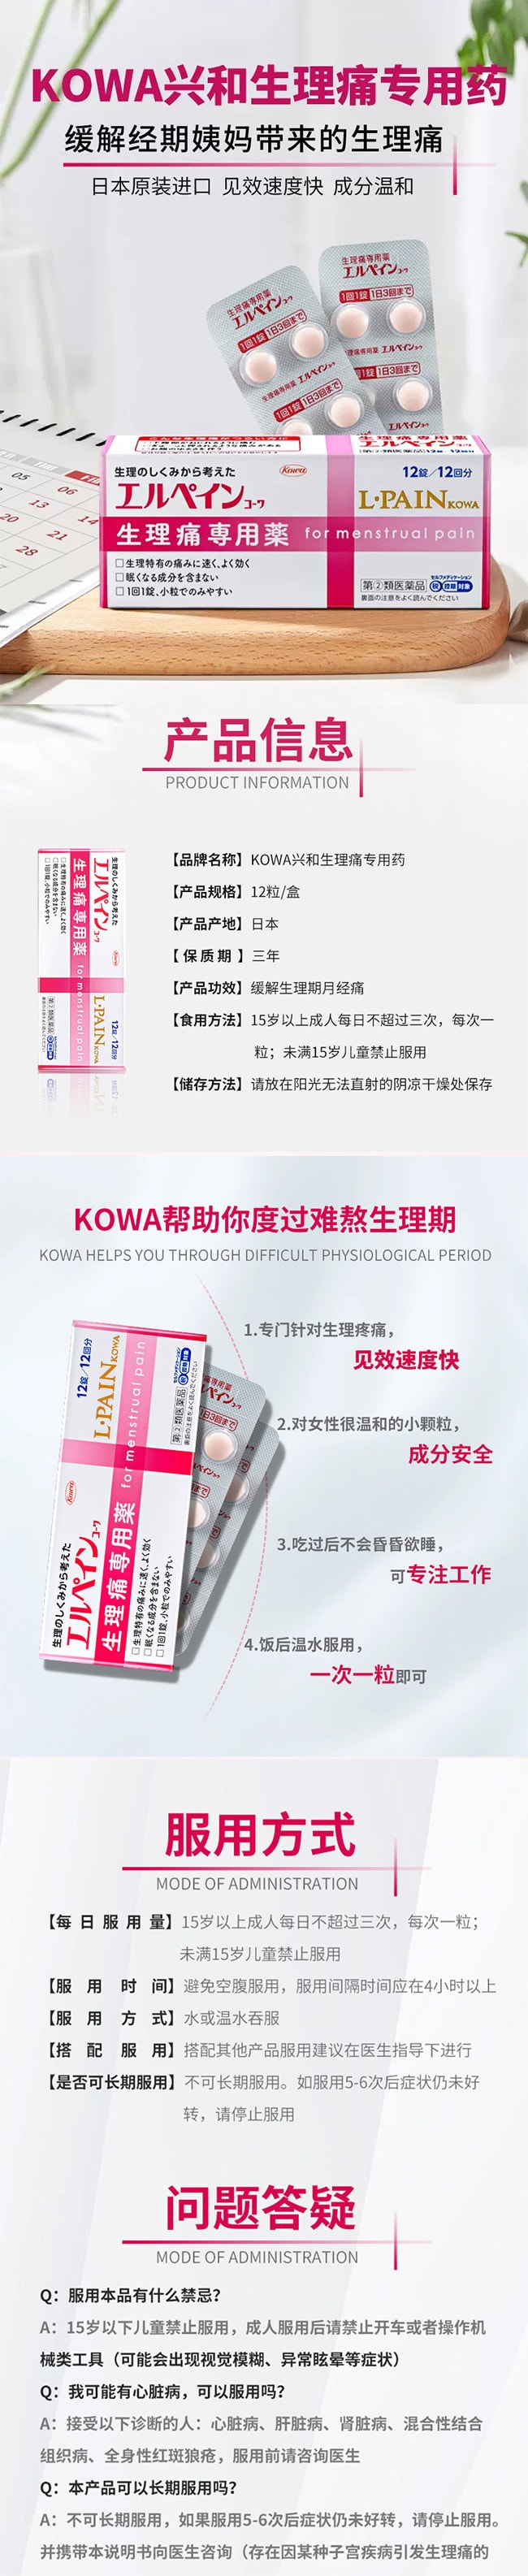 【日本直效郵件】KOWA興及製藥 L-Pain 生理痛專用藥 12粒入 有效緩解生理痛頭痛